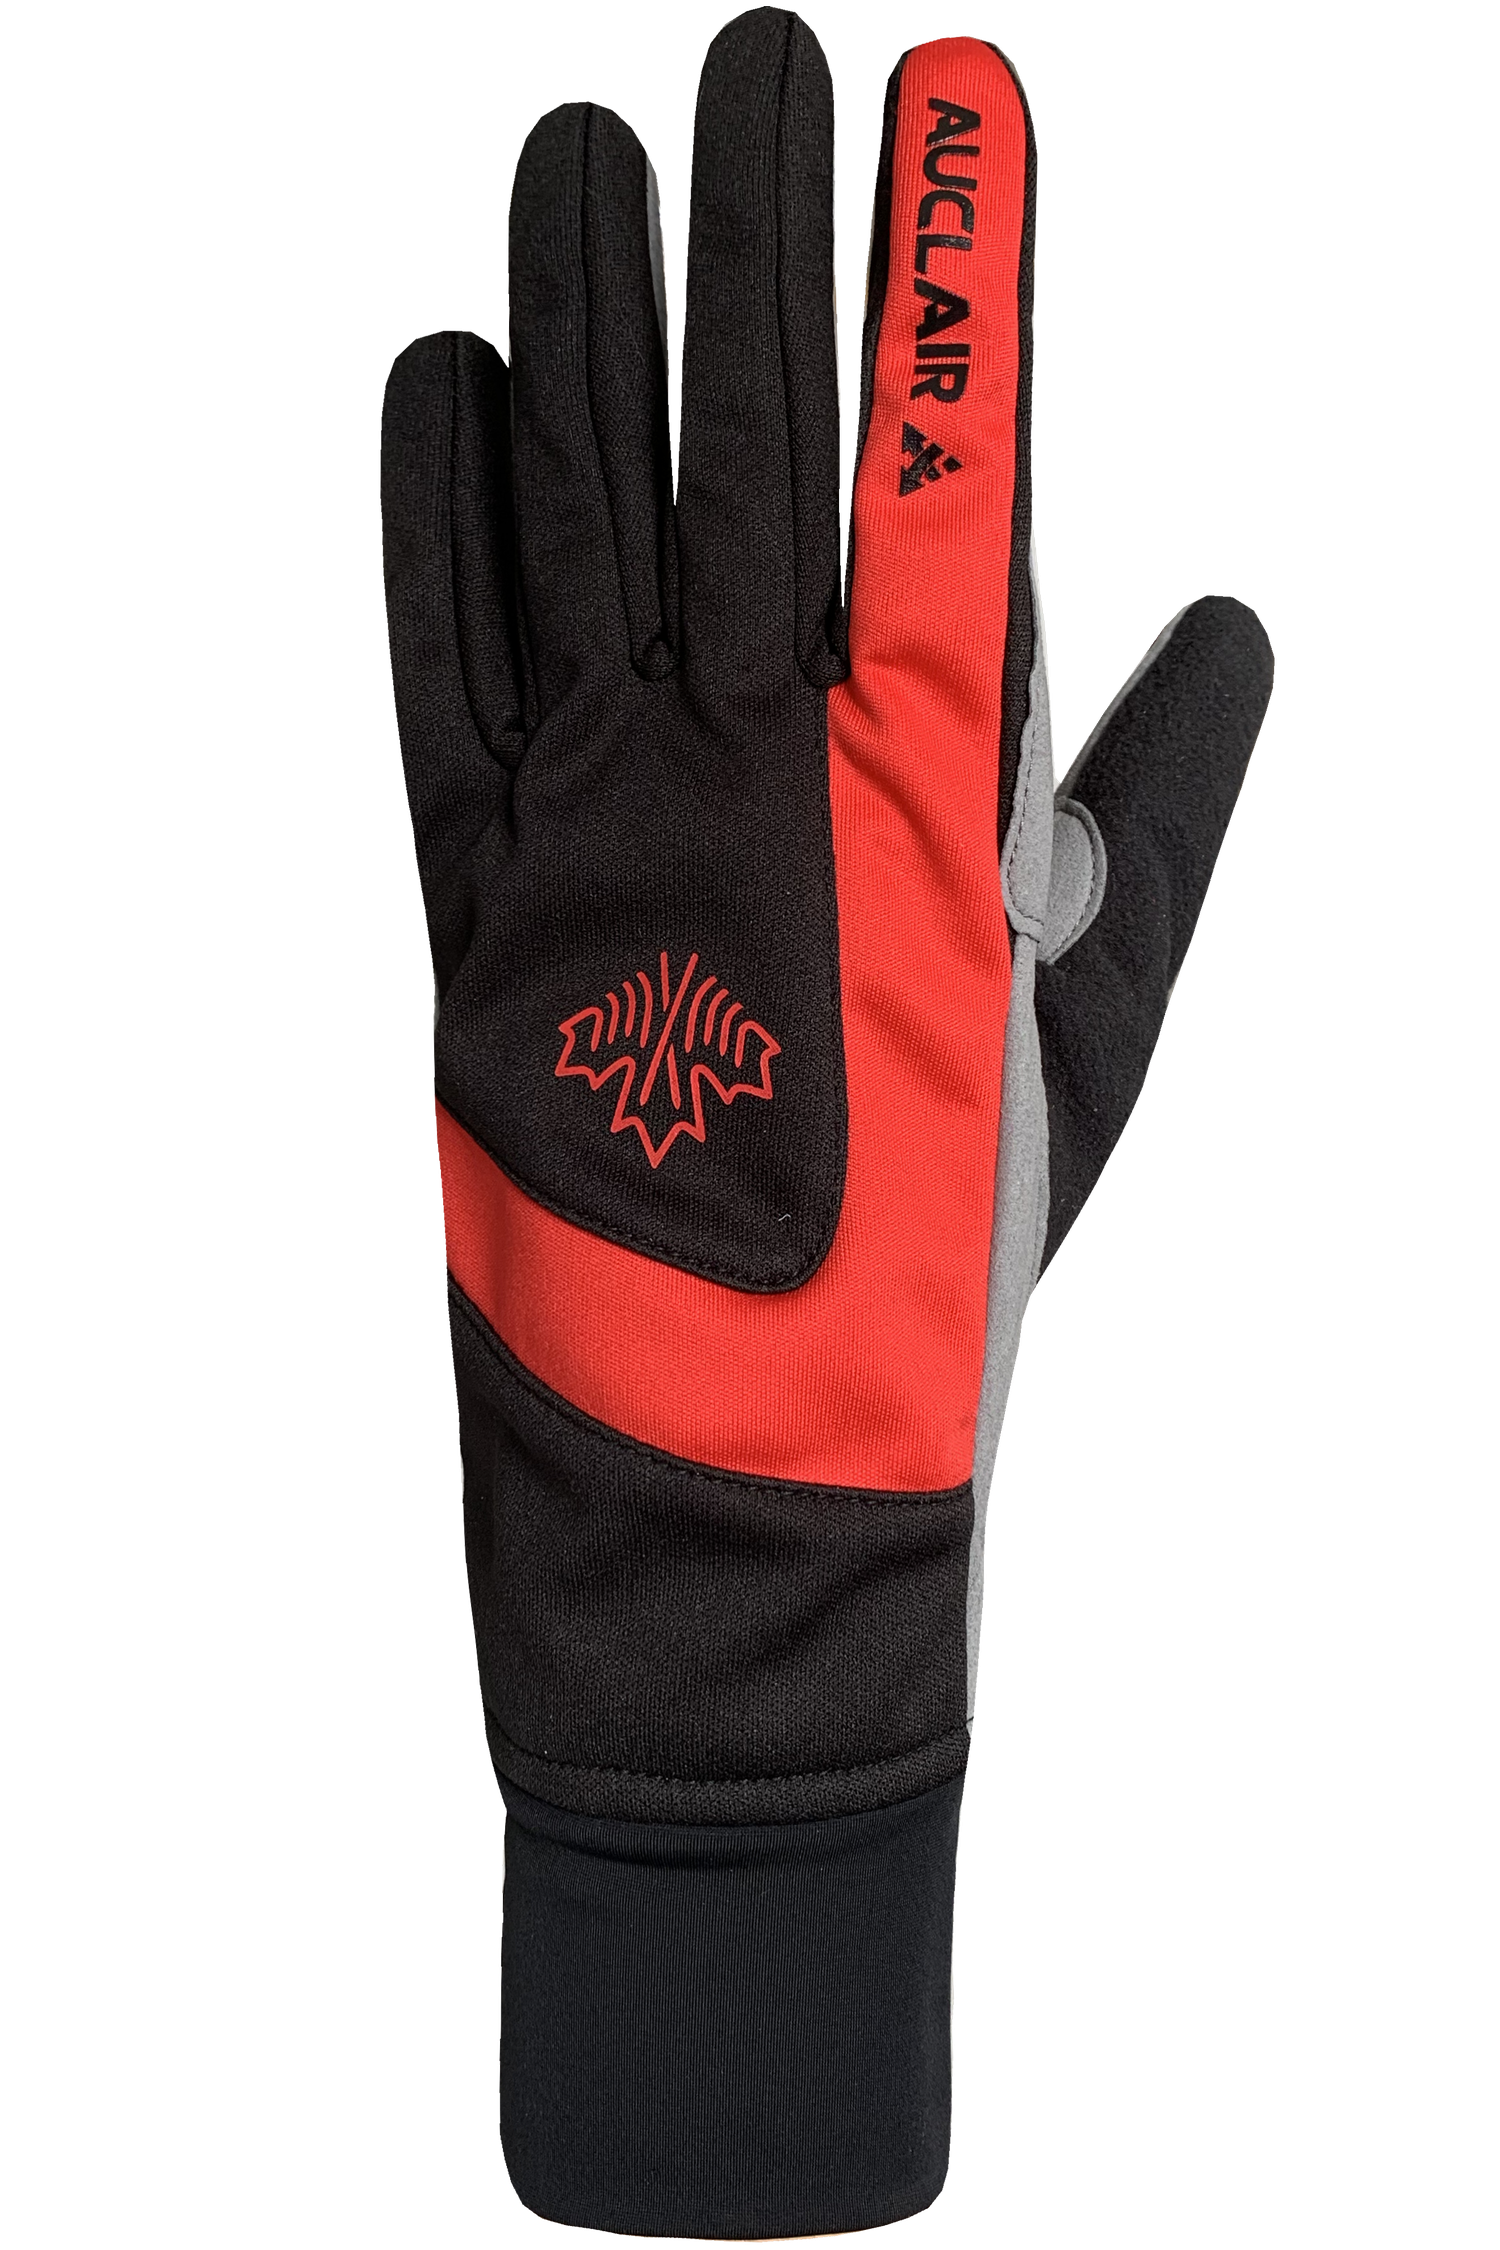 Cross Country Training Gloves - Men, Black/Red/White